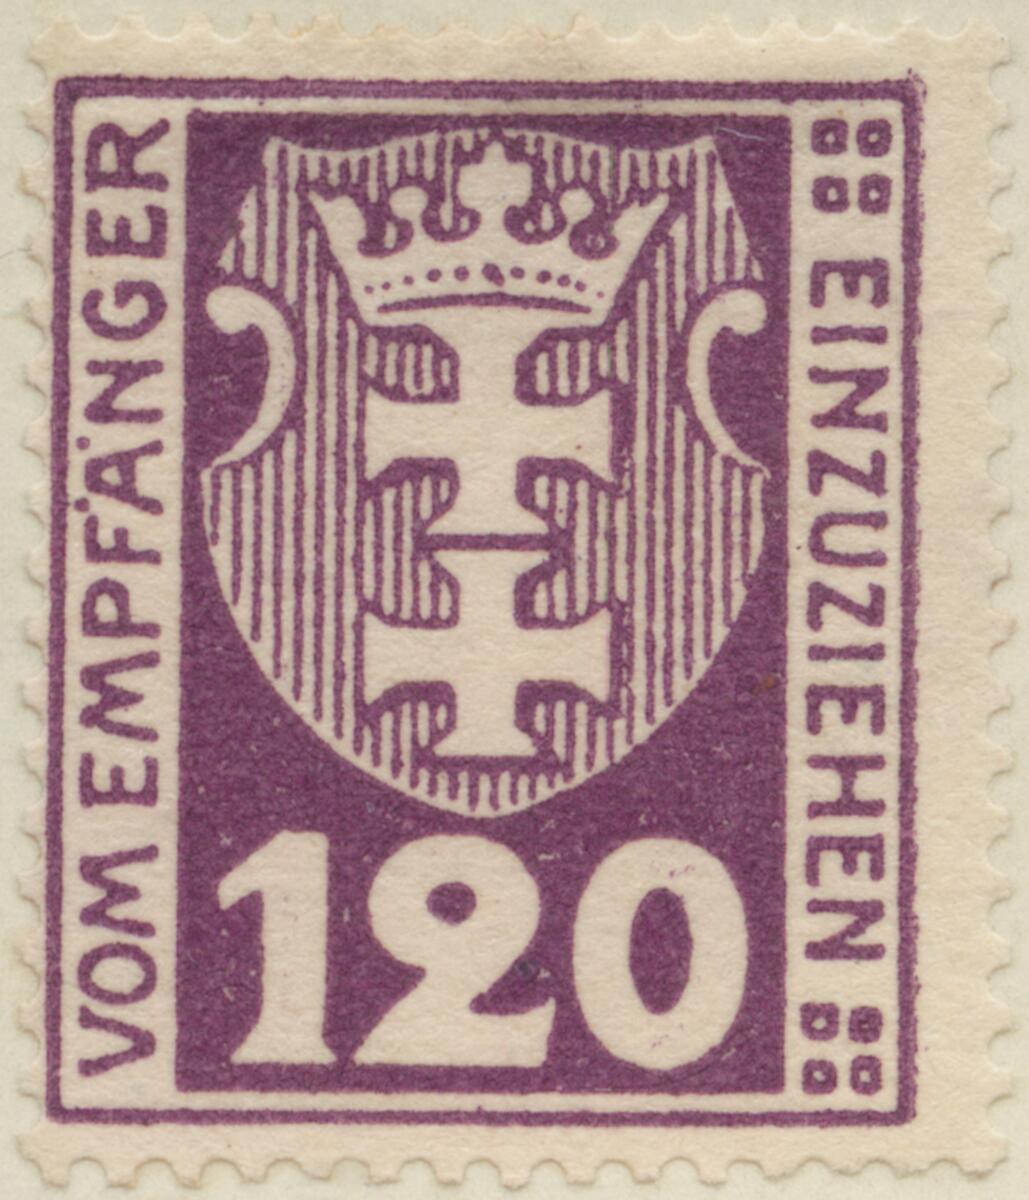 Frimärke ur Gösta Bodmans filatelistiska motivsamling, påbörjad 1950.
Frimärke från Danzig, 1921. Motiv av Danzigs- Vapen